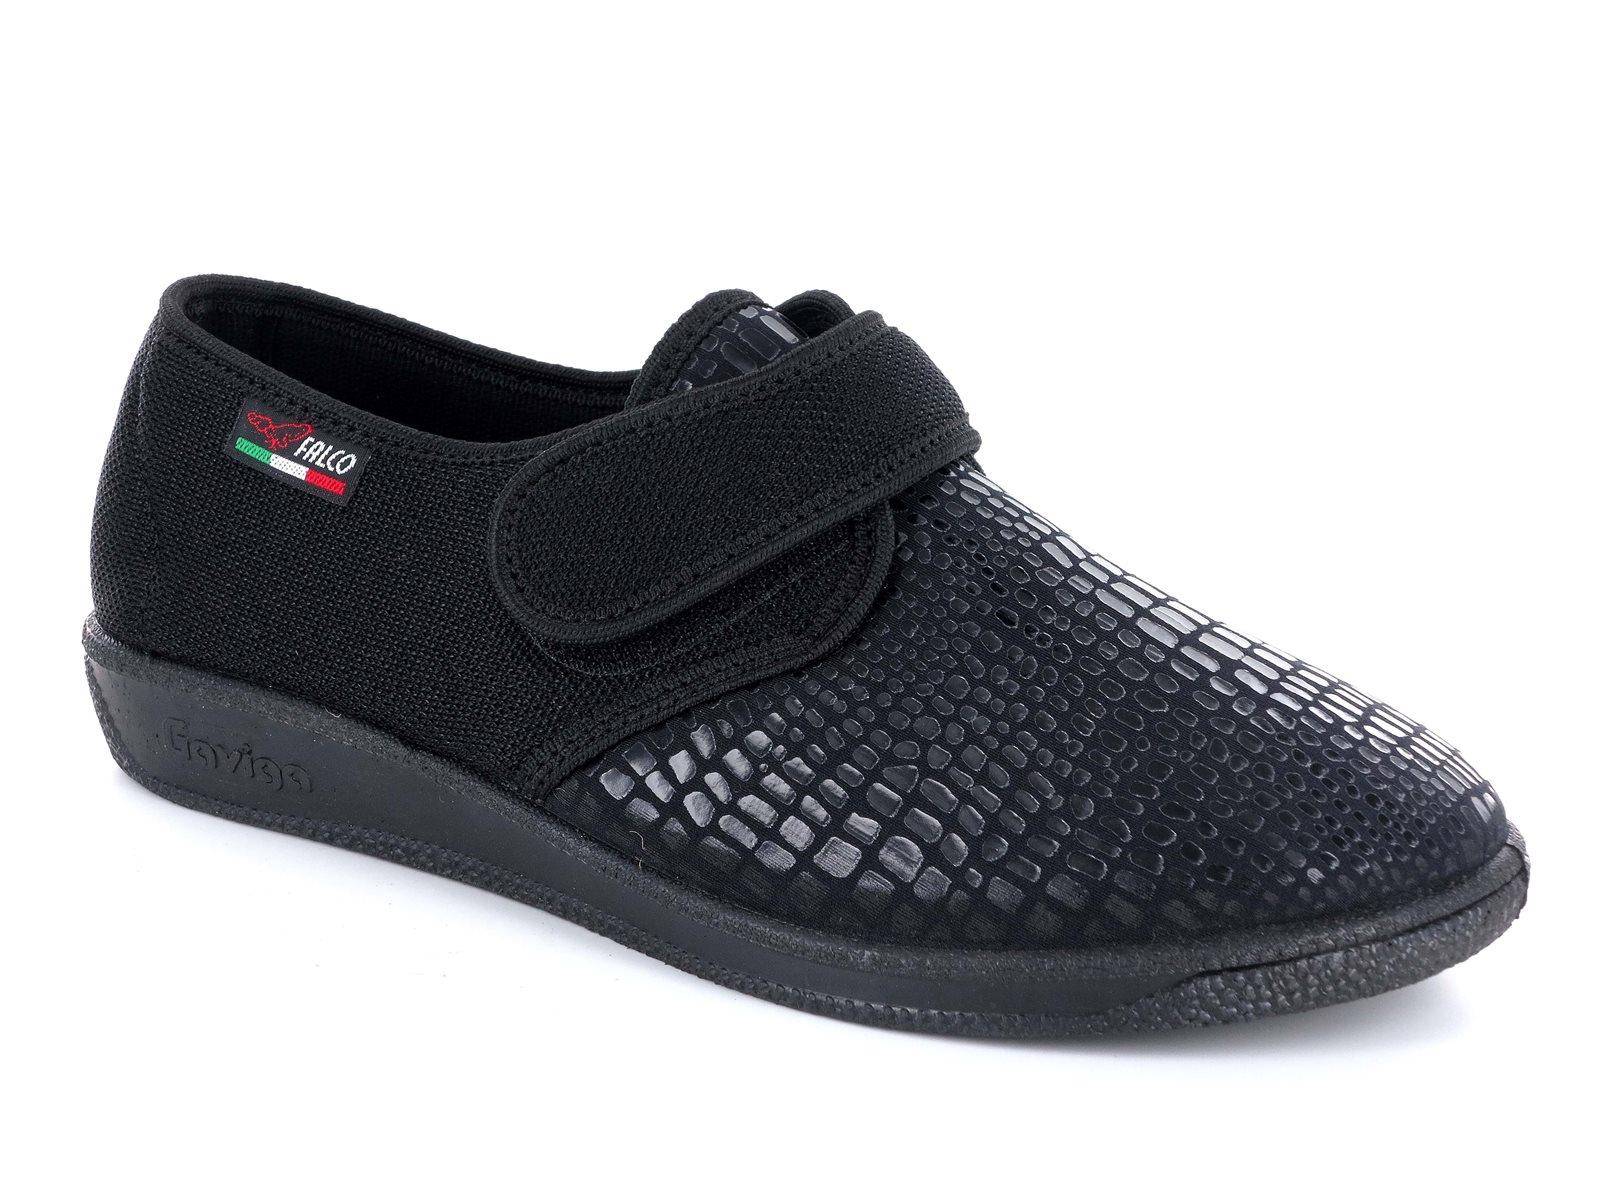 Gaviga 6213 Scarpe pantofole comfort da donna in tessuto con strappo nel colore blu e nero.